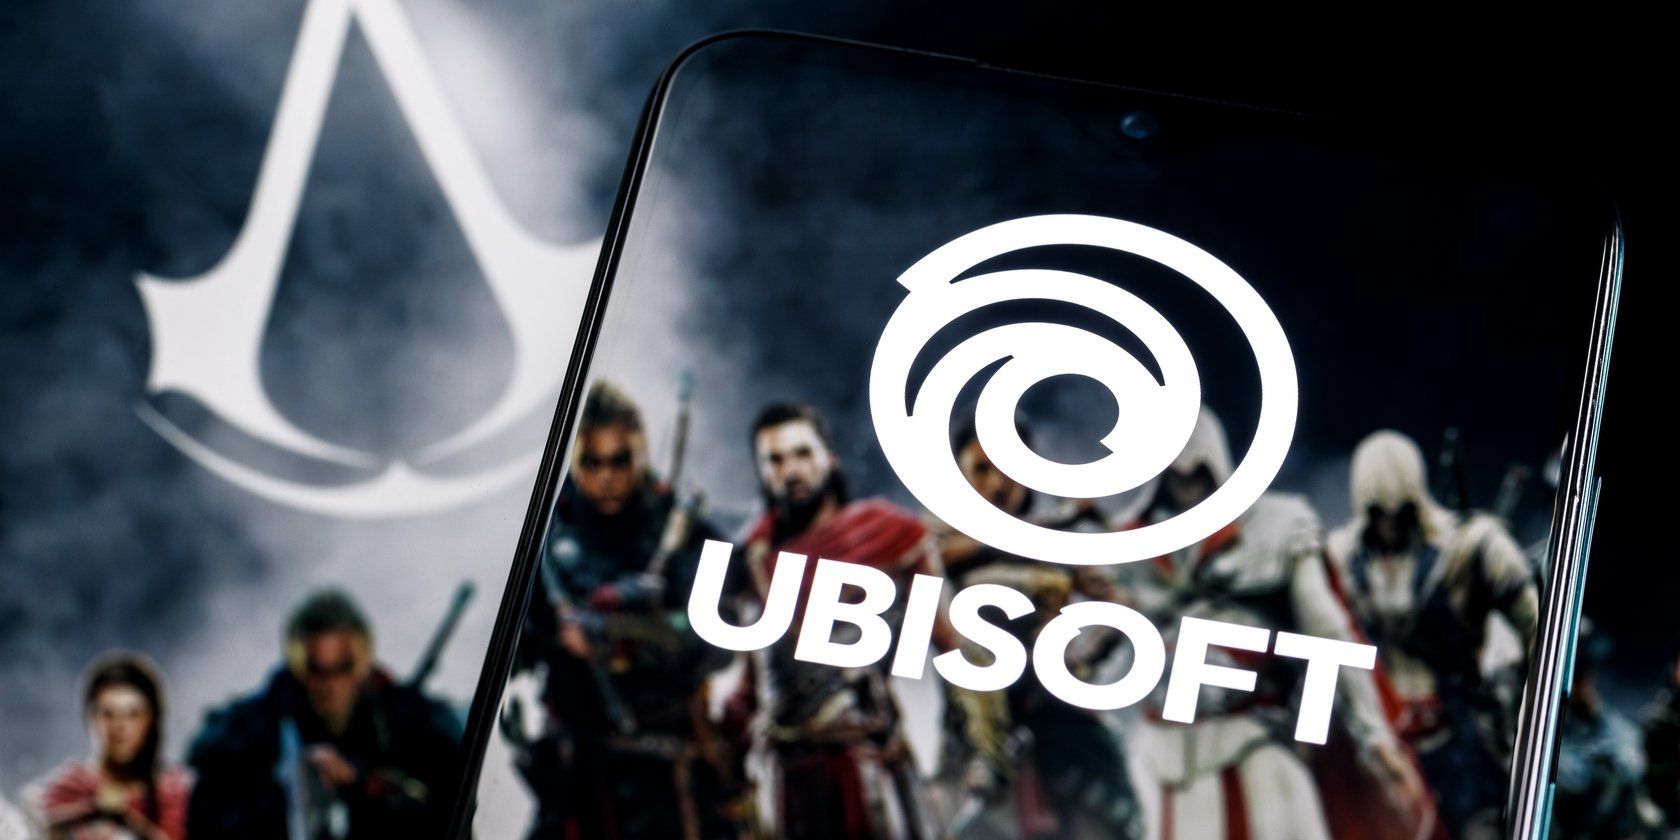 Ubisoft logo and characters